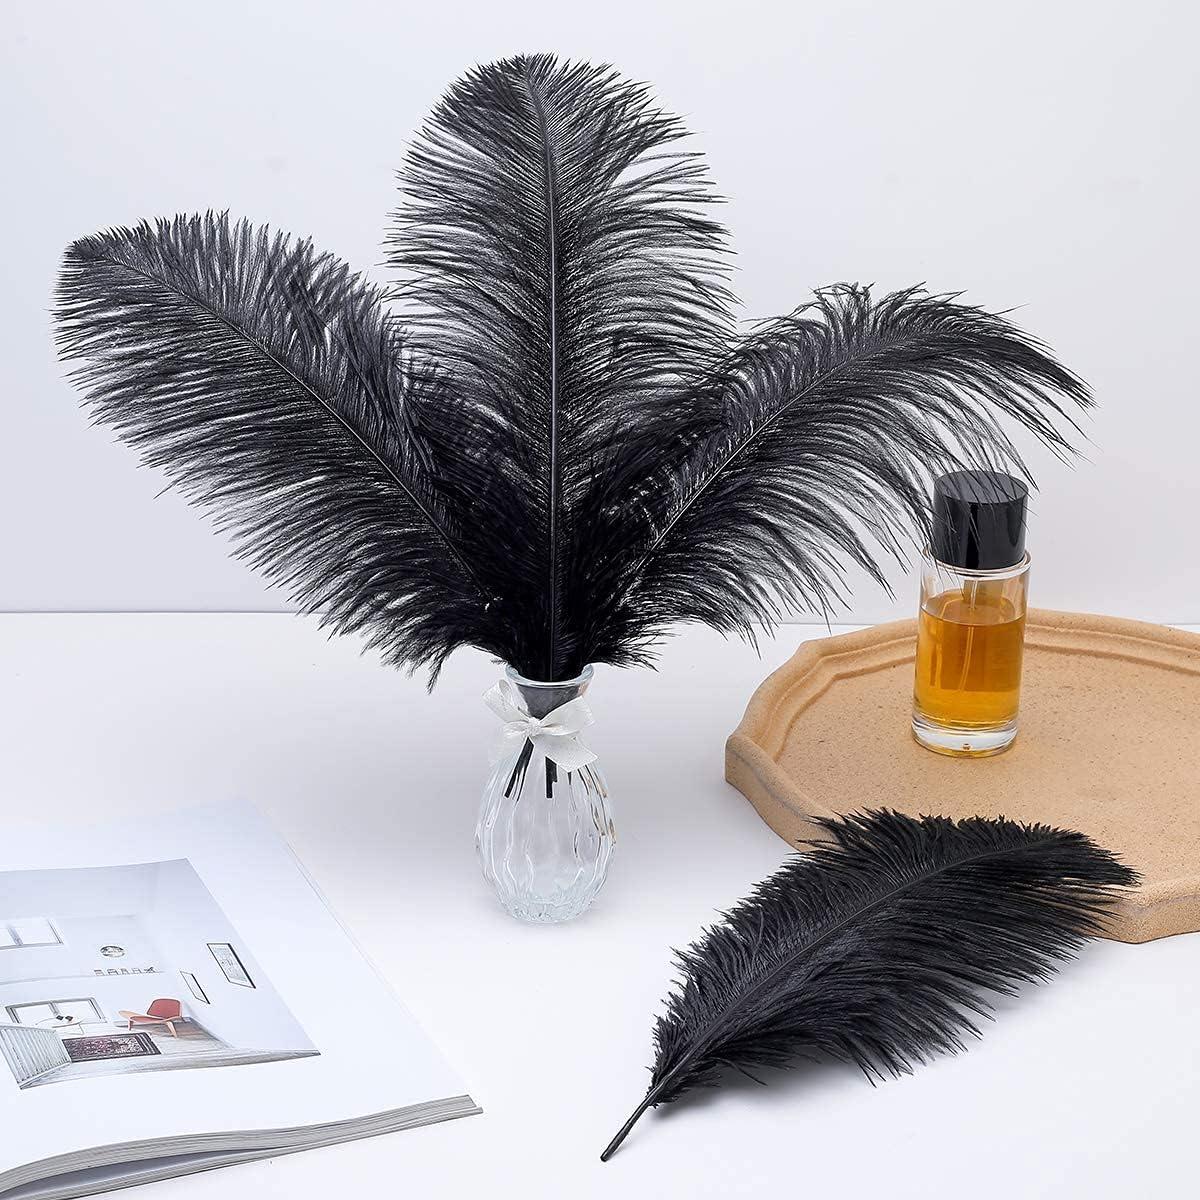 EVNNO Evnno 10 Pcs Natural Black Ostrich Feathers Making Kit,27-29